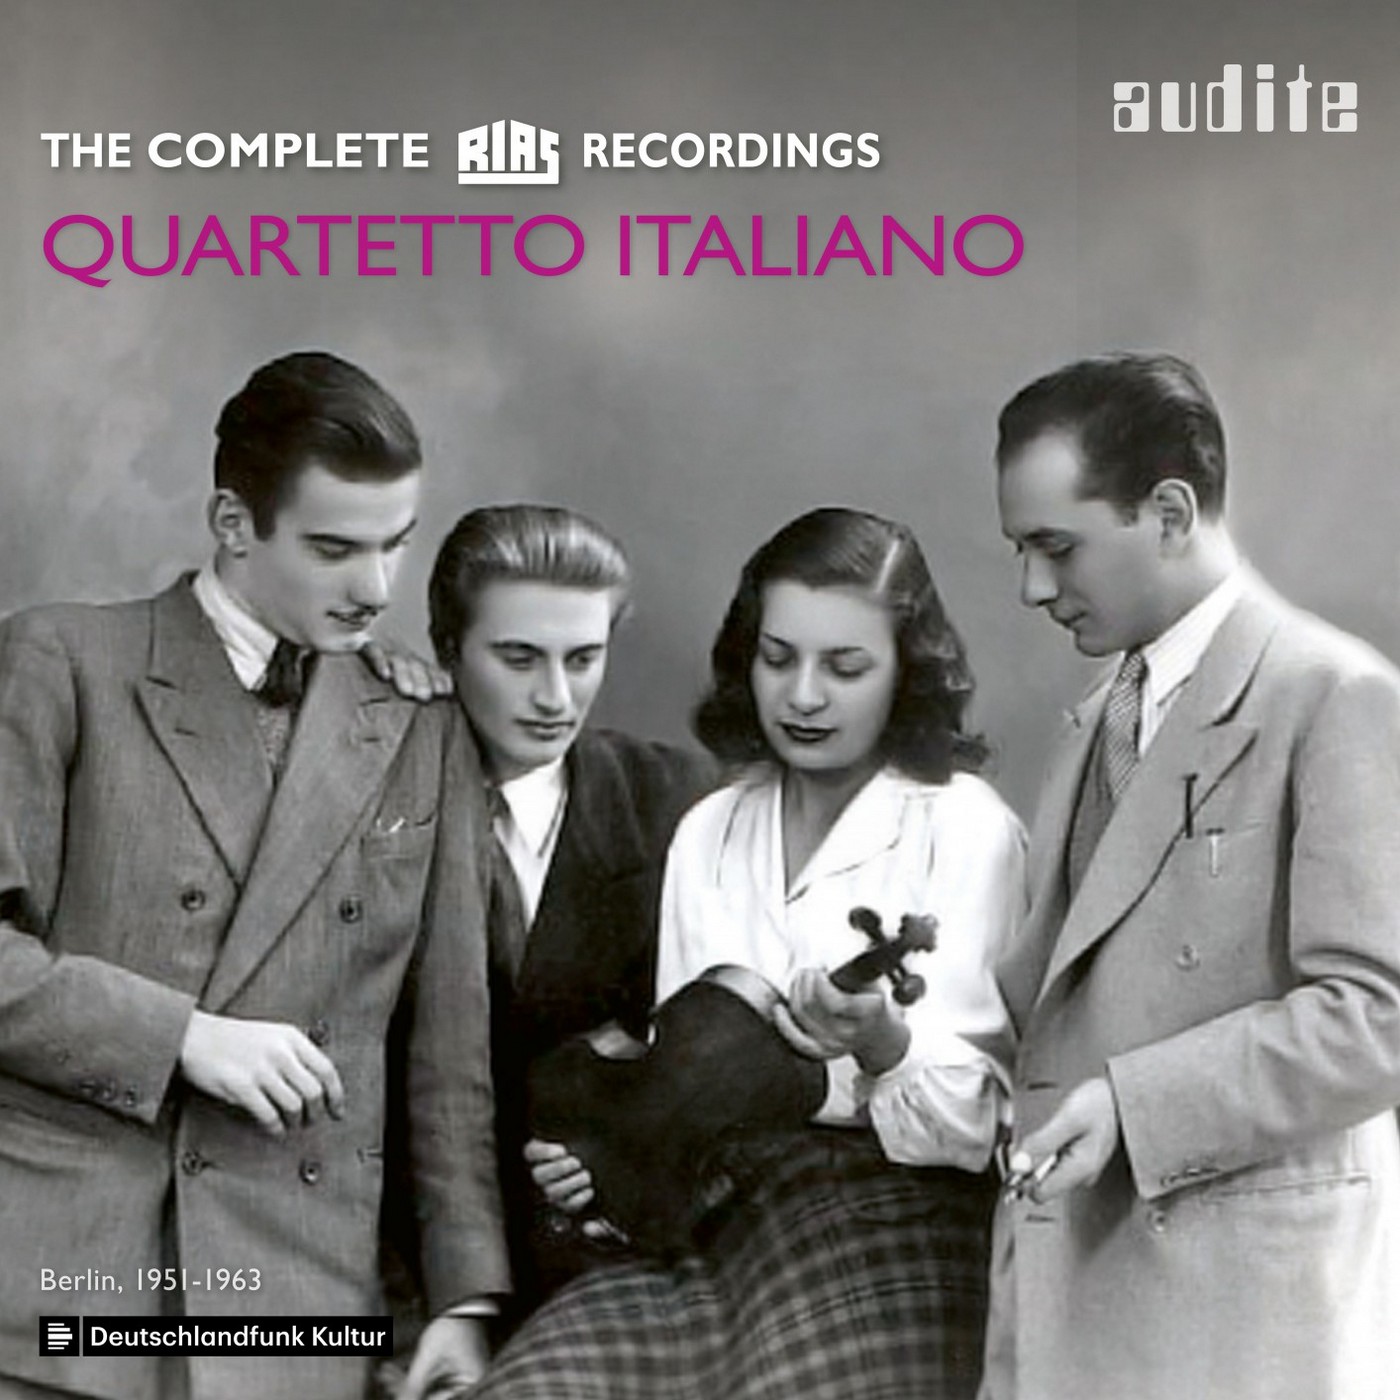 Quartetto Italiano - Quartetto Italiano: The complete RIAS Recordings (Berlin, 1951-1963) (2019) [FLAC 24bit/48kHz]